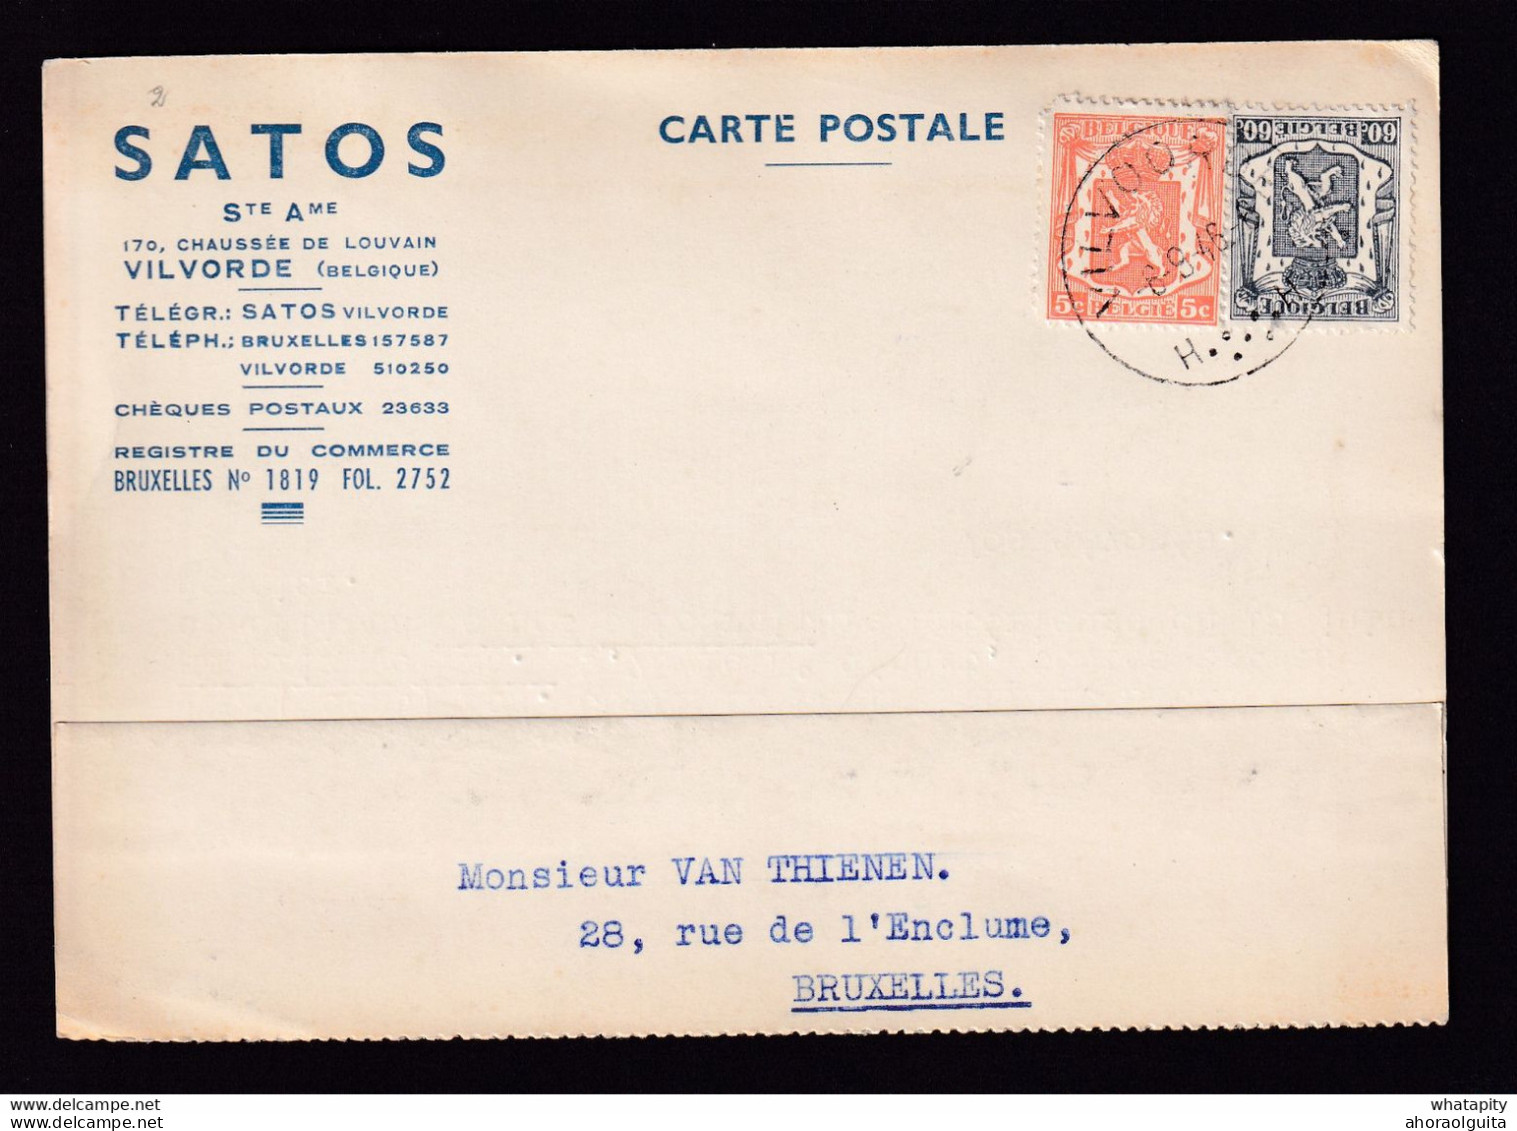 DDBB 010 - Carte Privée TP Petit Sceau VILVOORDE 1946 - Entete SATOS S.A. - Vente De Colle De Lapin - 1935-1949 Petit Sceau De L'Etat